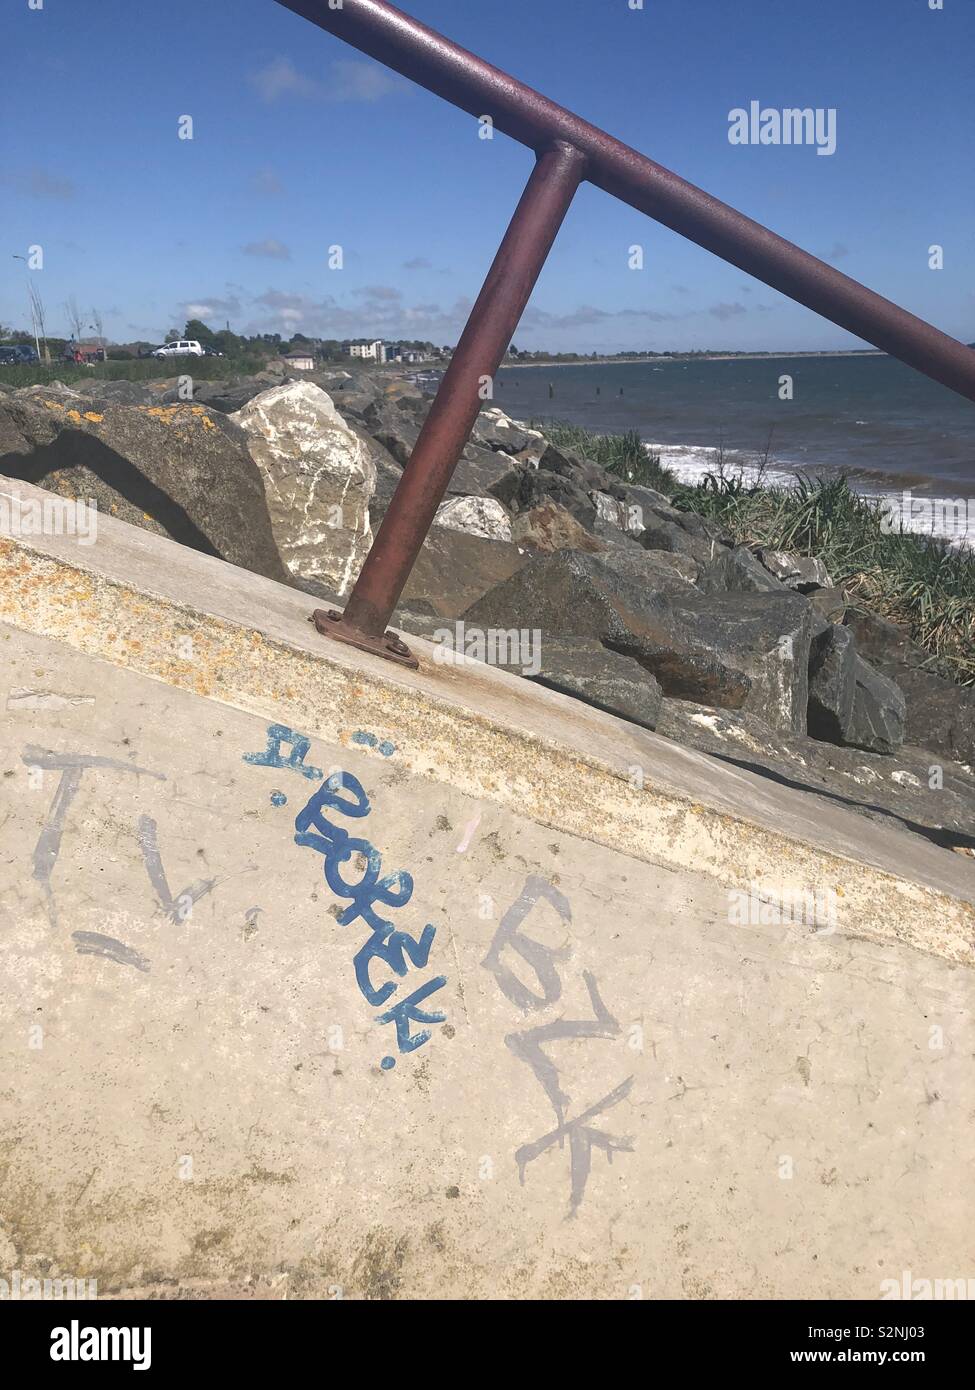 Le graffiti à la plage Banque D'Images